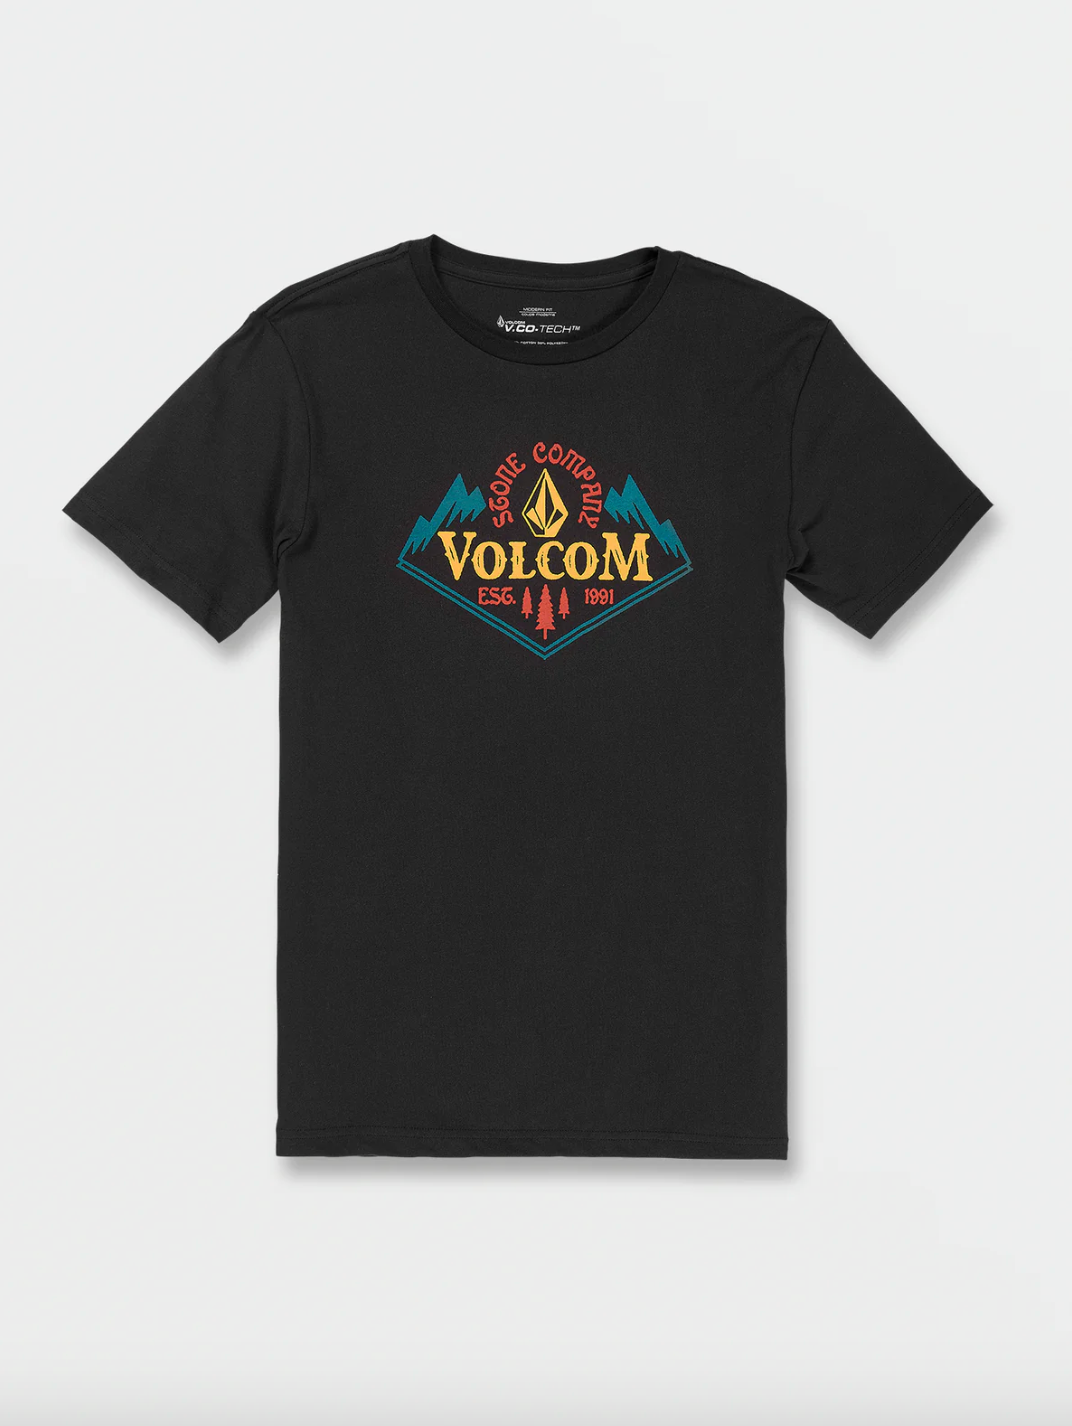 Volcom Mens Crested T-Shirt – Shop